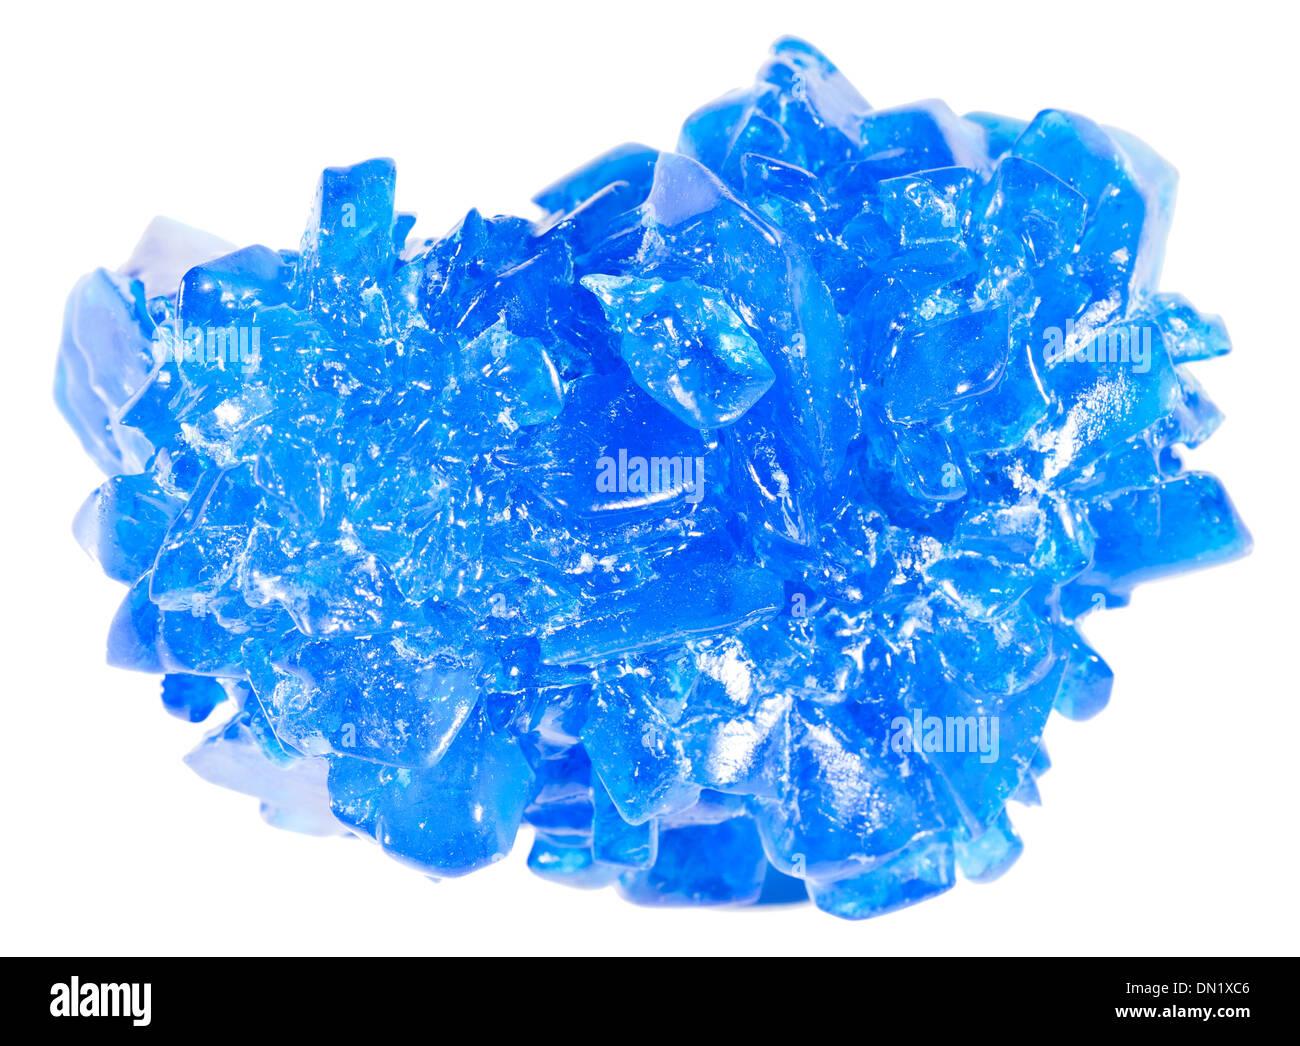 Isolierte Foto von einem blauen Kristall oder Mineral auf weißem Hintergrund Stockfoto